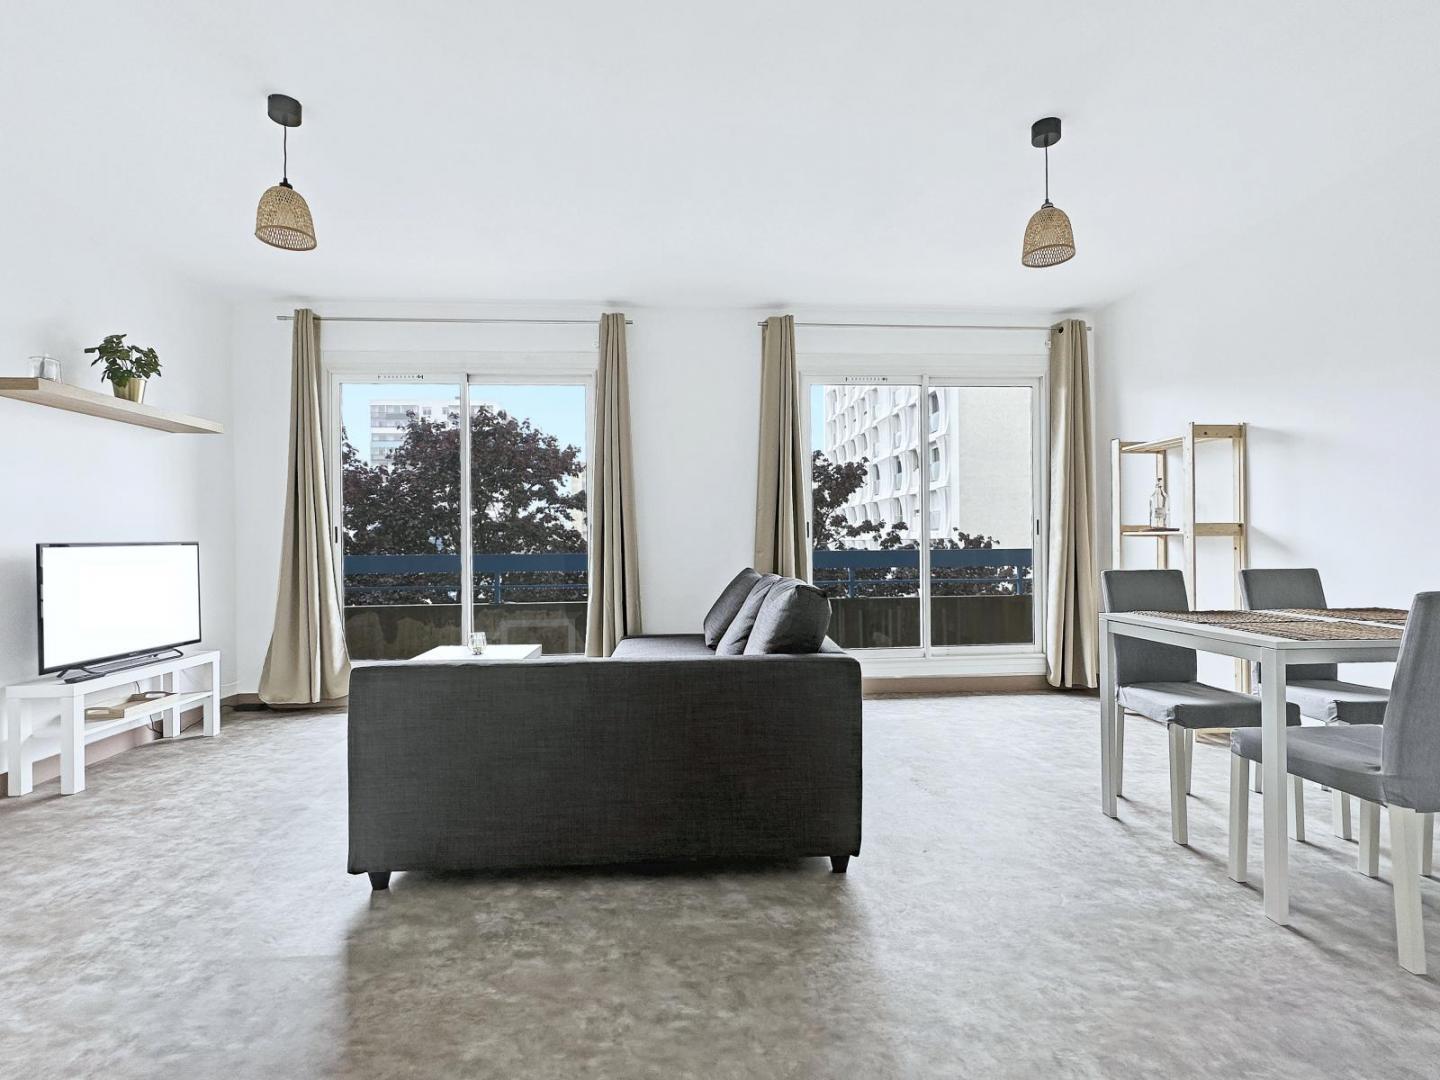  BREST : Bel appartement de 80m² en colocation meublée avec 3 chambres et balcons